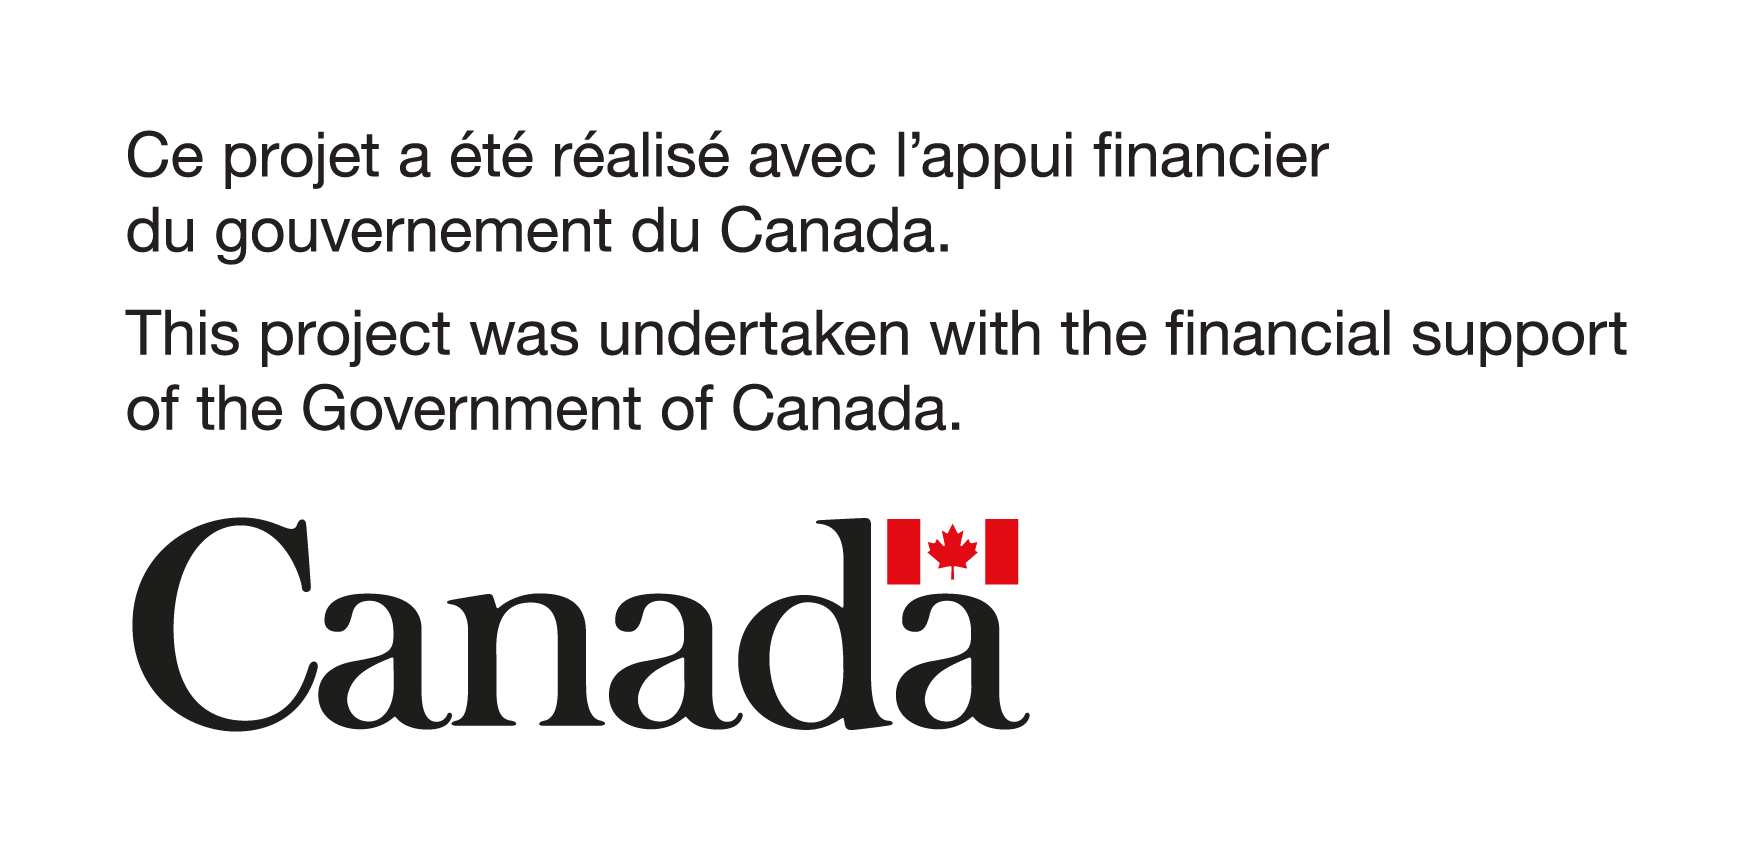 Ce projet a été réalisé avec l'appui financier du gouvernement du Canada.